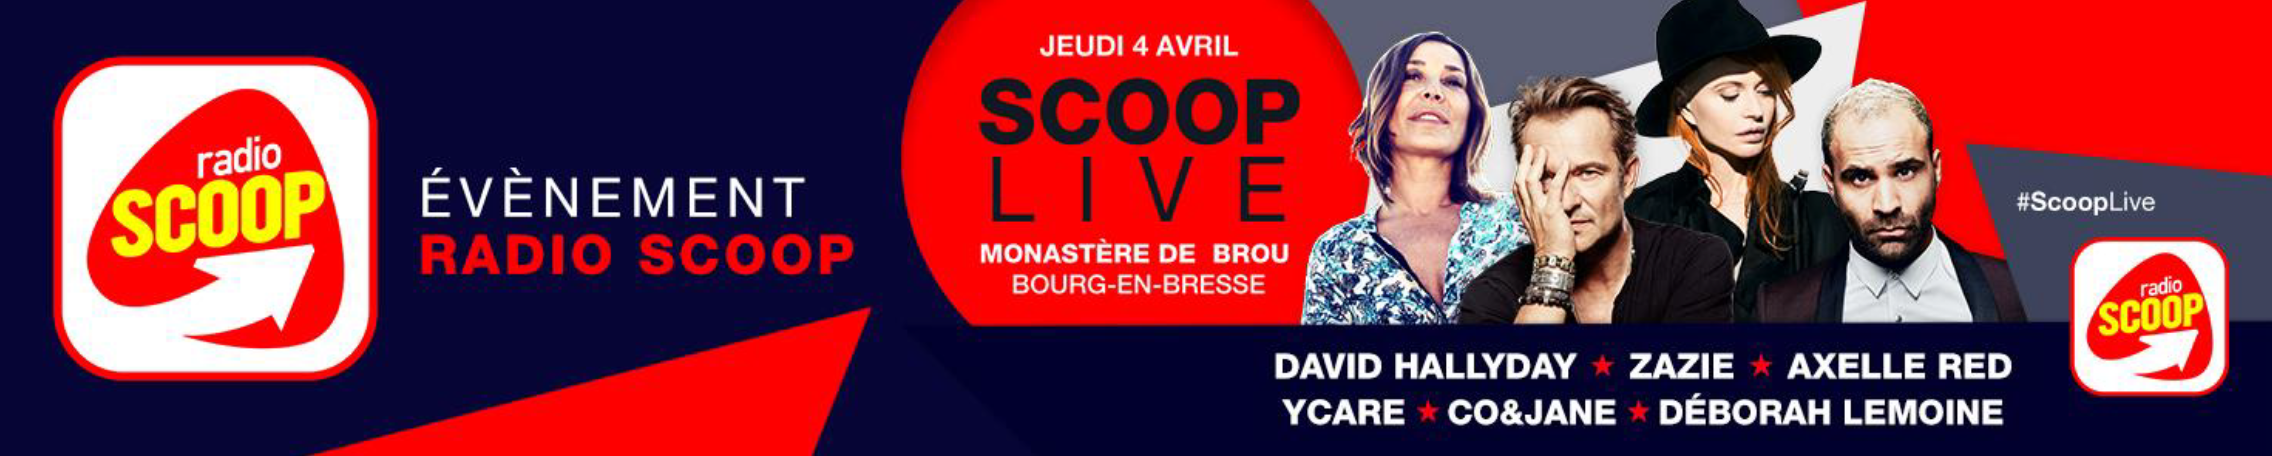 Radio Scoop : un Scoop Live à Bourg-en-Bresse